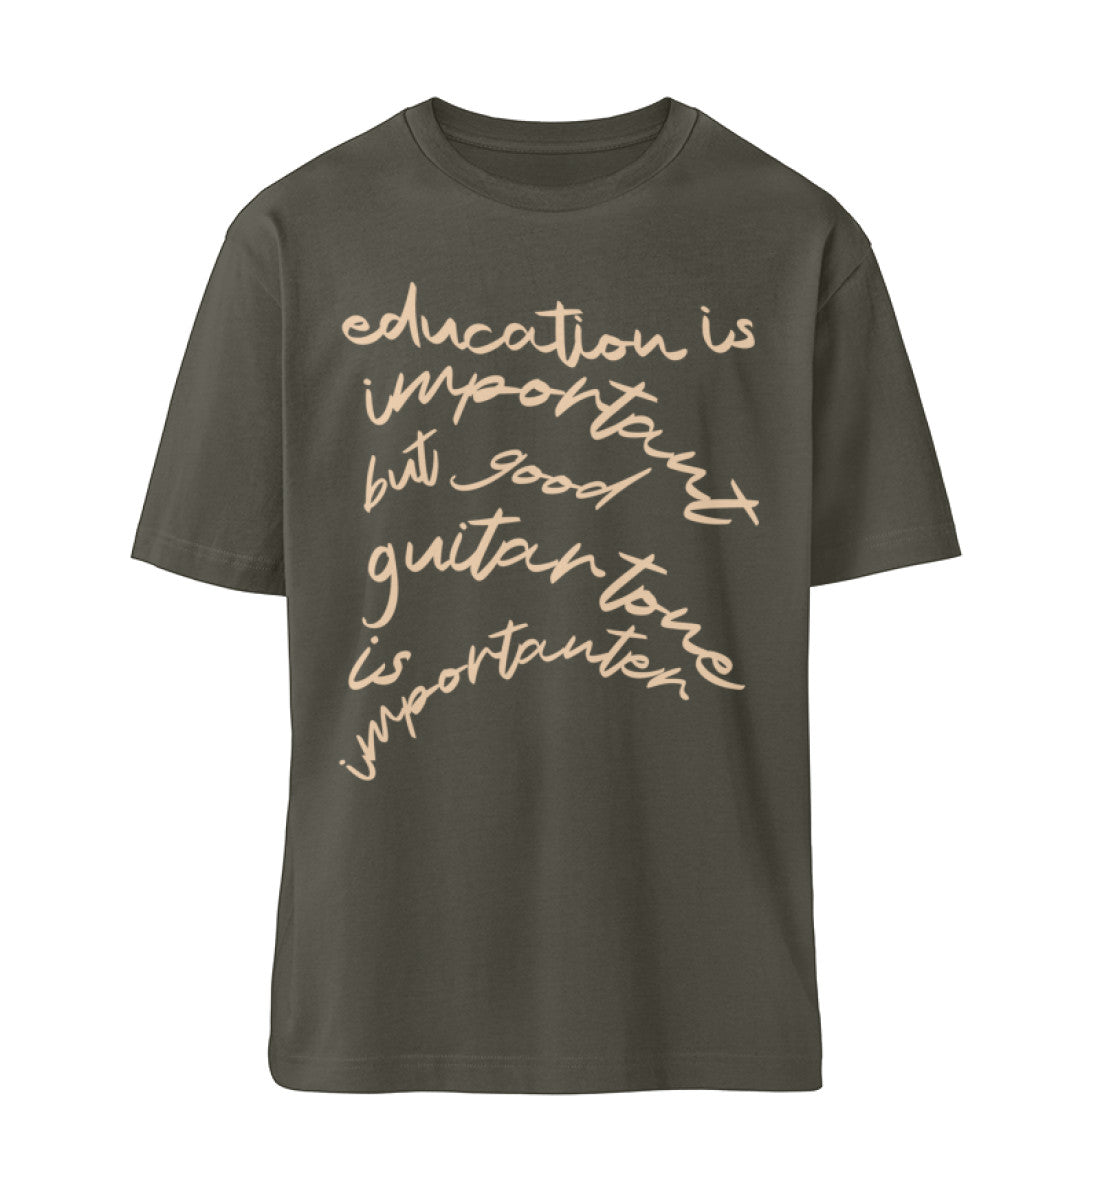 Khaki T-Shirt Unisex Relaxed Fit für Frauen und Männer bedruckt mit dem Design der Roger Rockawoo Kollektion education versus guitar tone